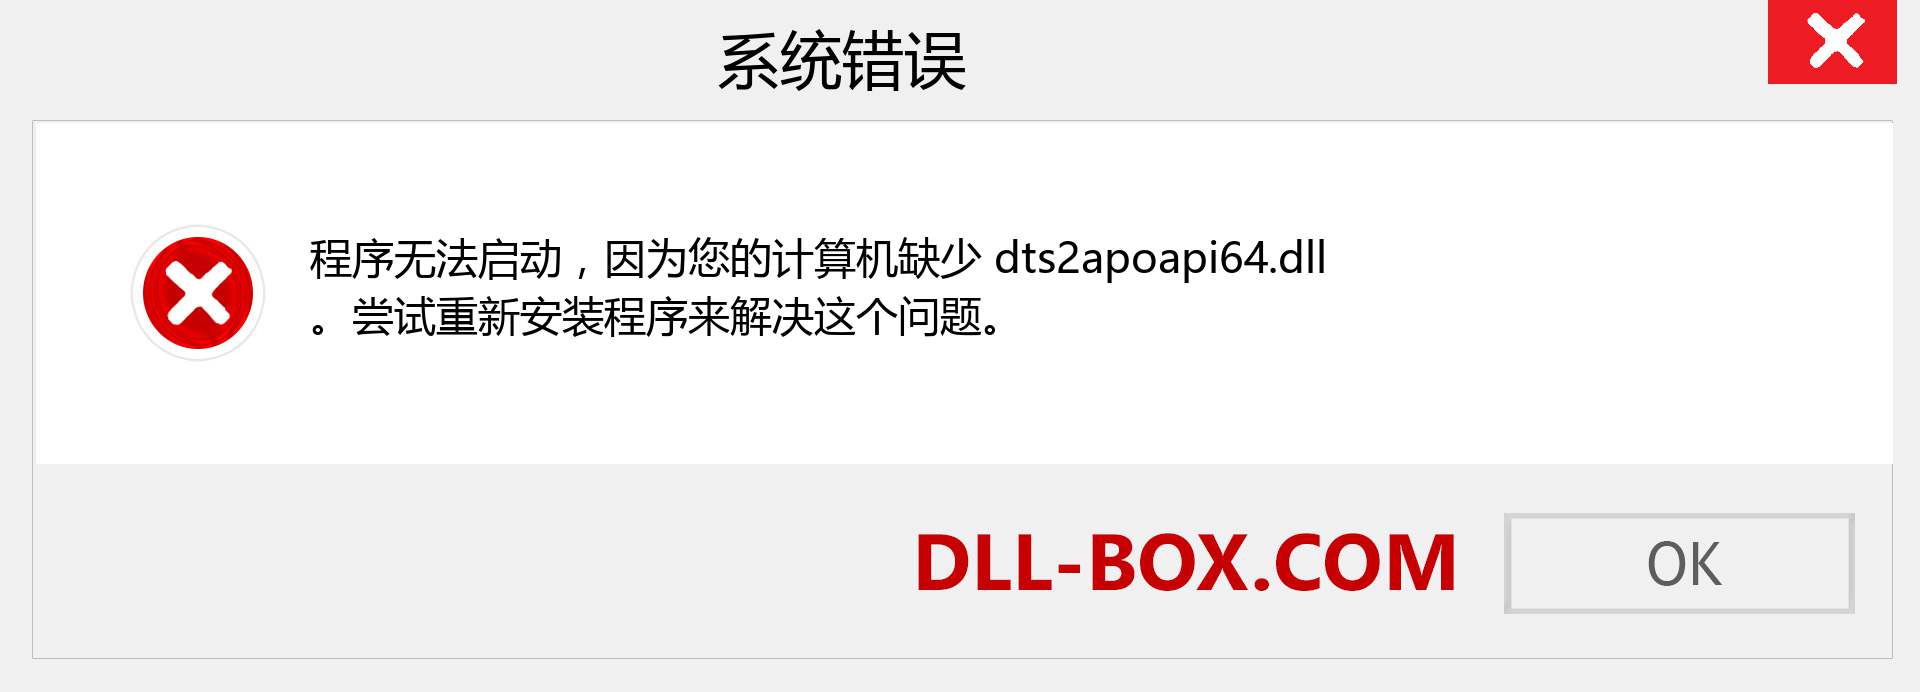 dts2apoapi64.dll 文件丢失？。 适用于 Windows 7、8、10 的下载 - 修复 Windows、照片、图像上的 dts2apoapi64 dll 丢失错误